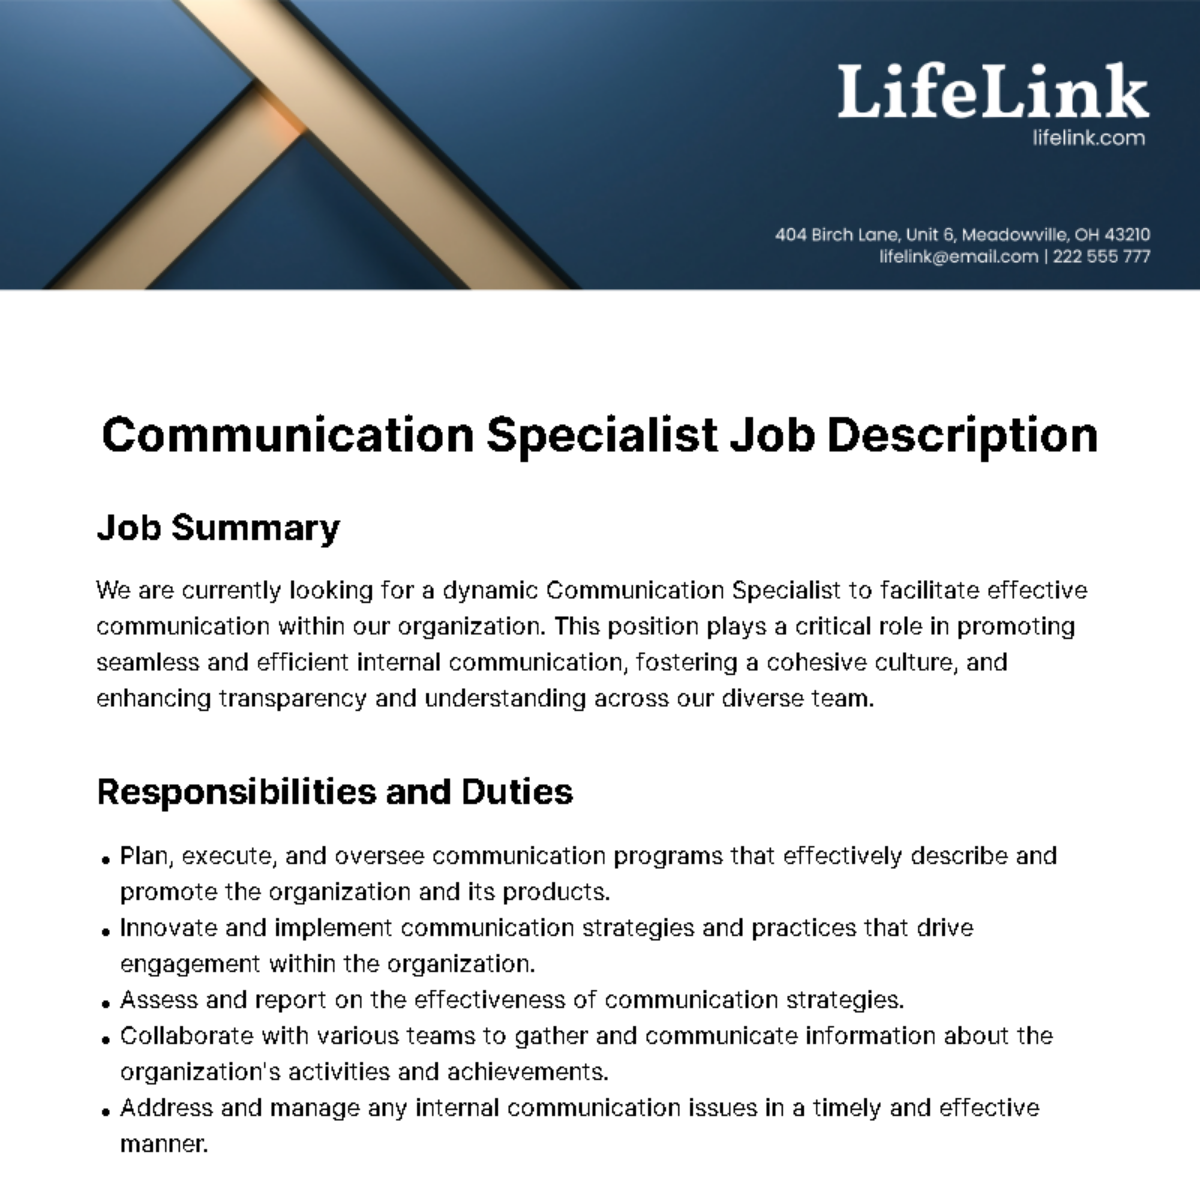 Communication Specialist Job Description Template